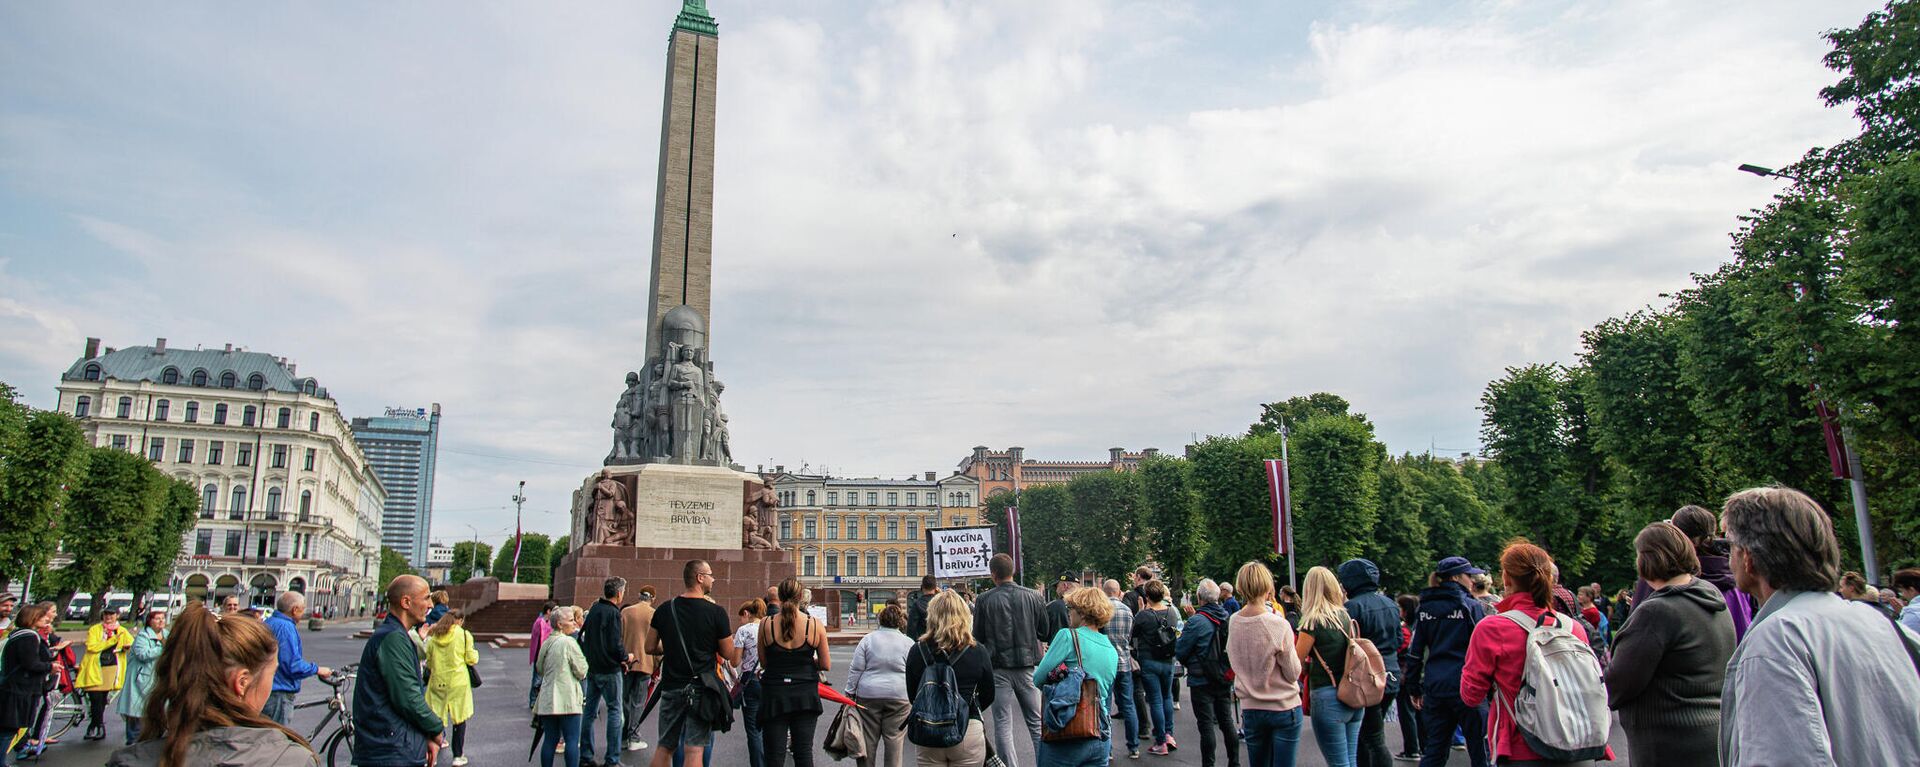 Несколько сотен человек собрались у памятника Свободы на акцию протеста против принудительной вакцинации - Sputnik Латвия, 1920, 14.08.2021